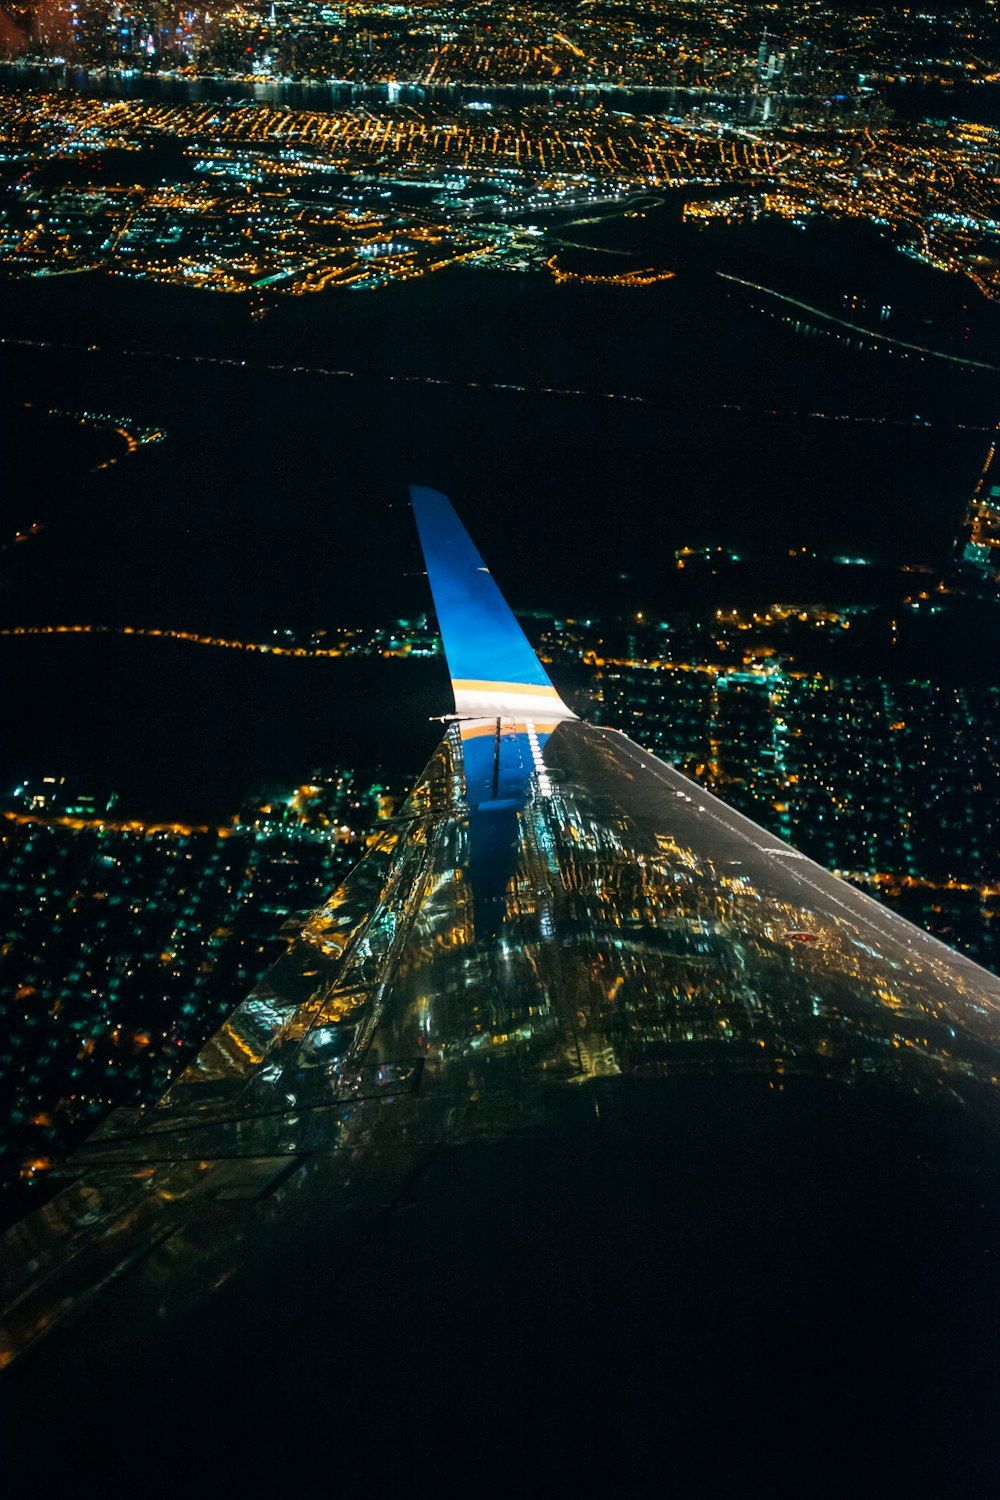 Ein Flugzeugflügel, der nachts über eine Stadt fliegt